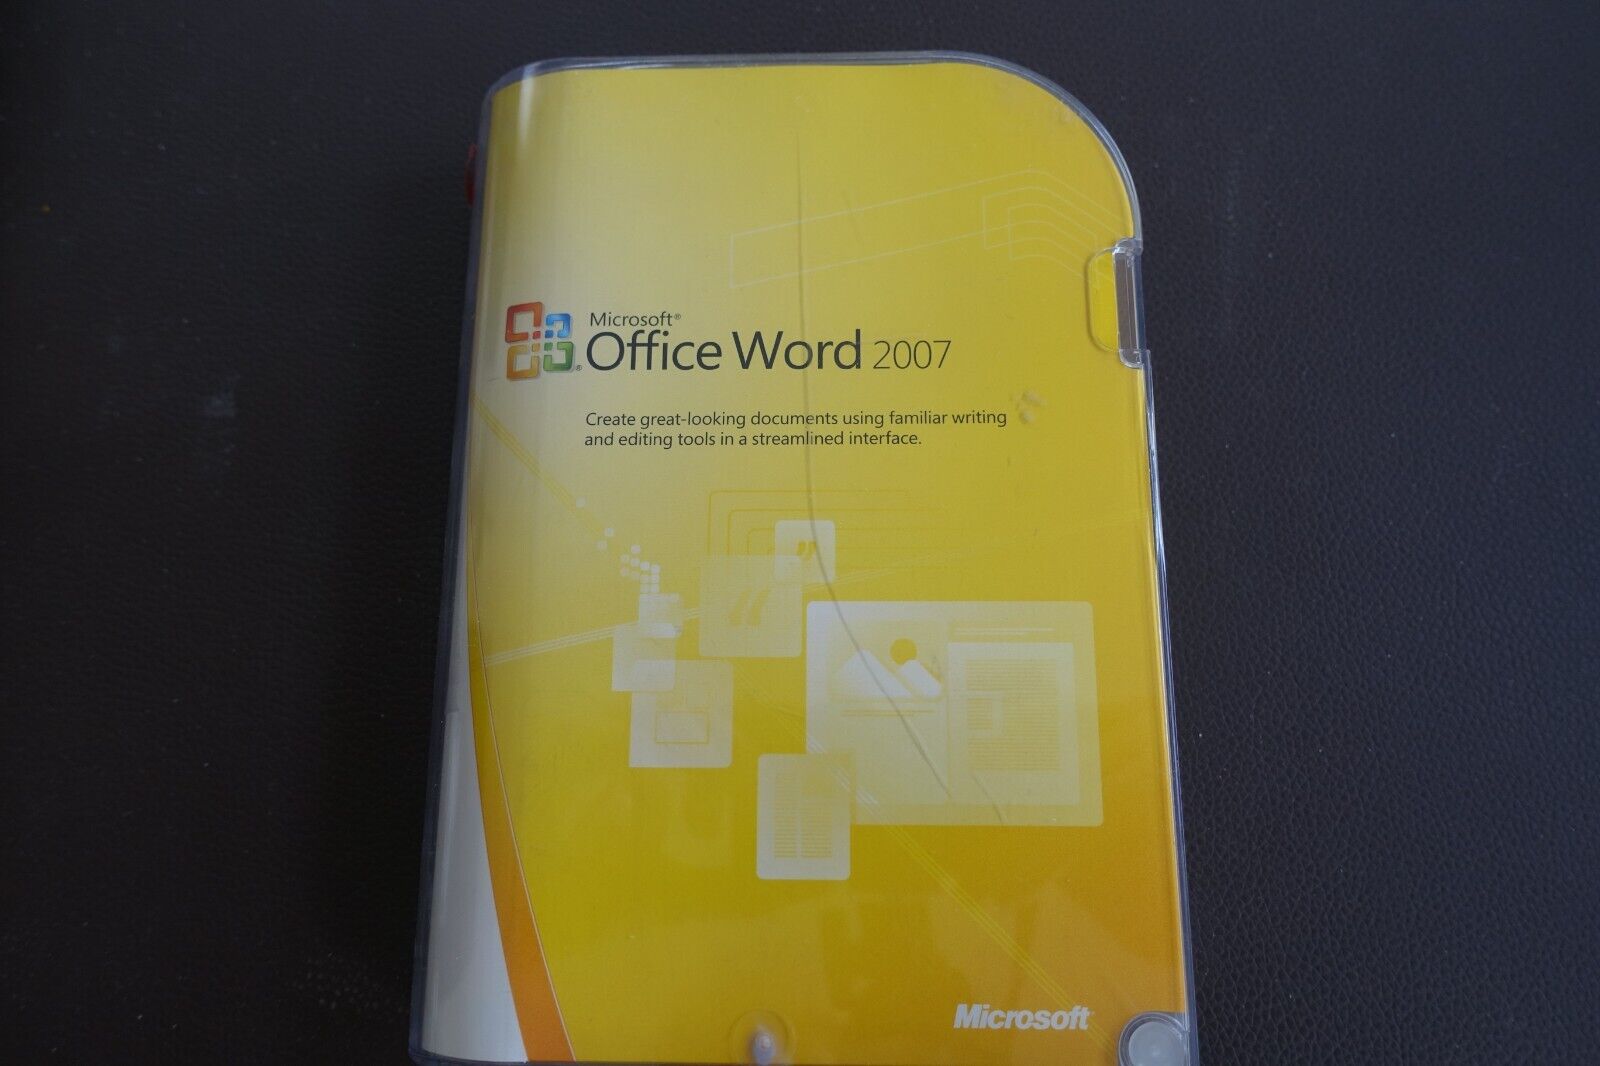 Microsoft Office Word 2007 CD in original packaging